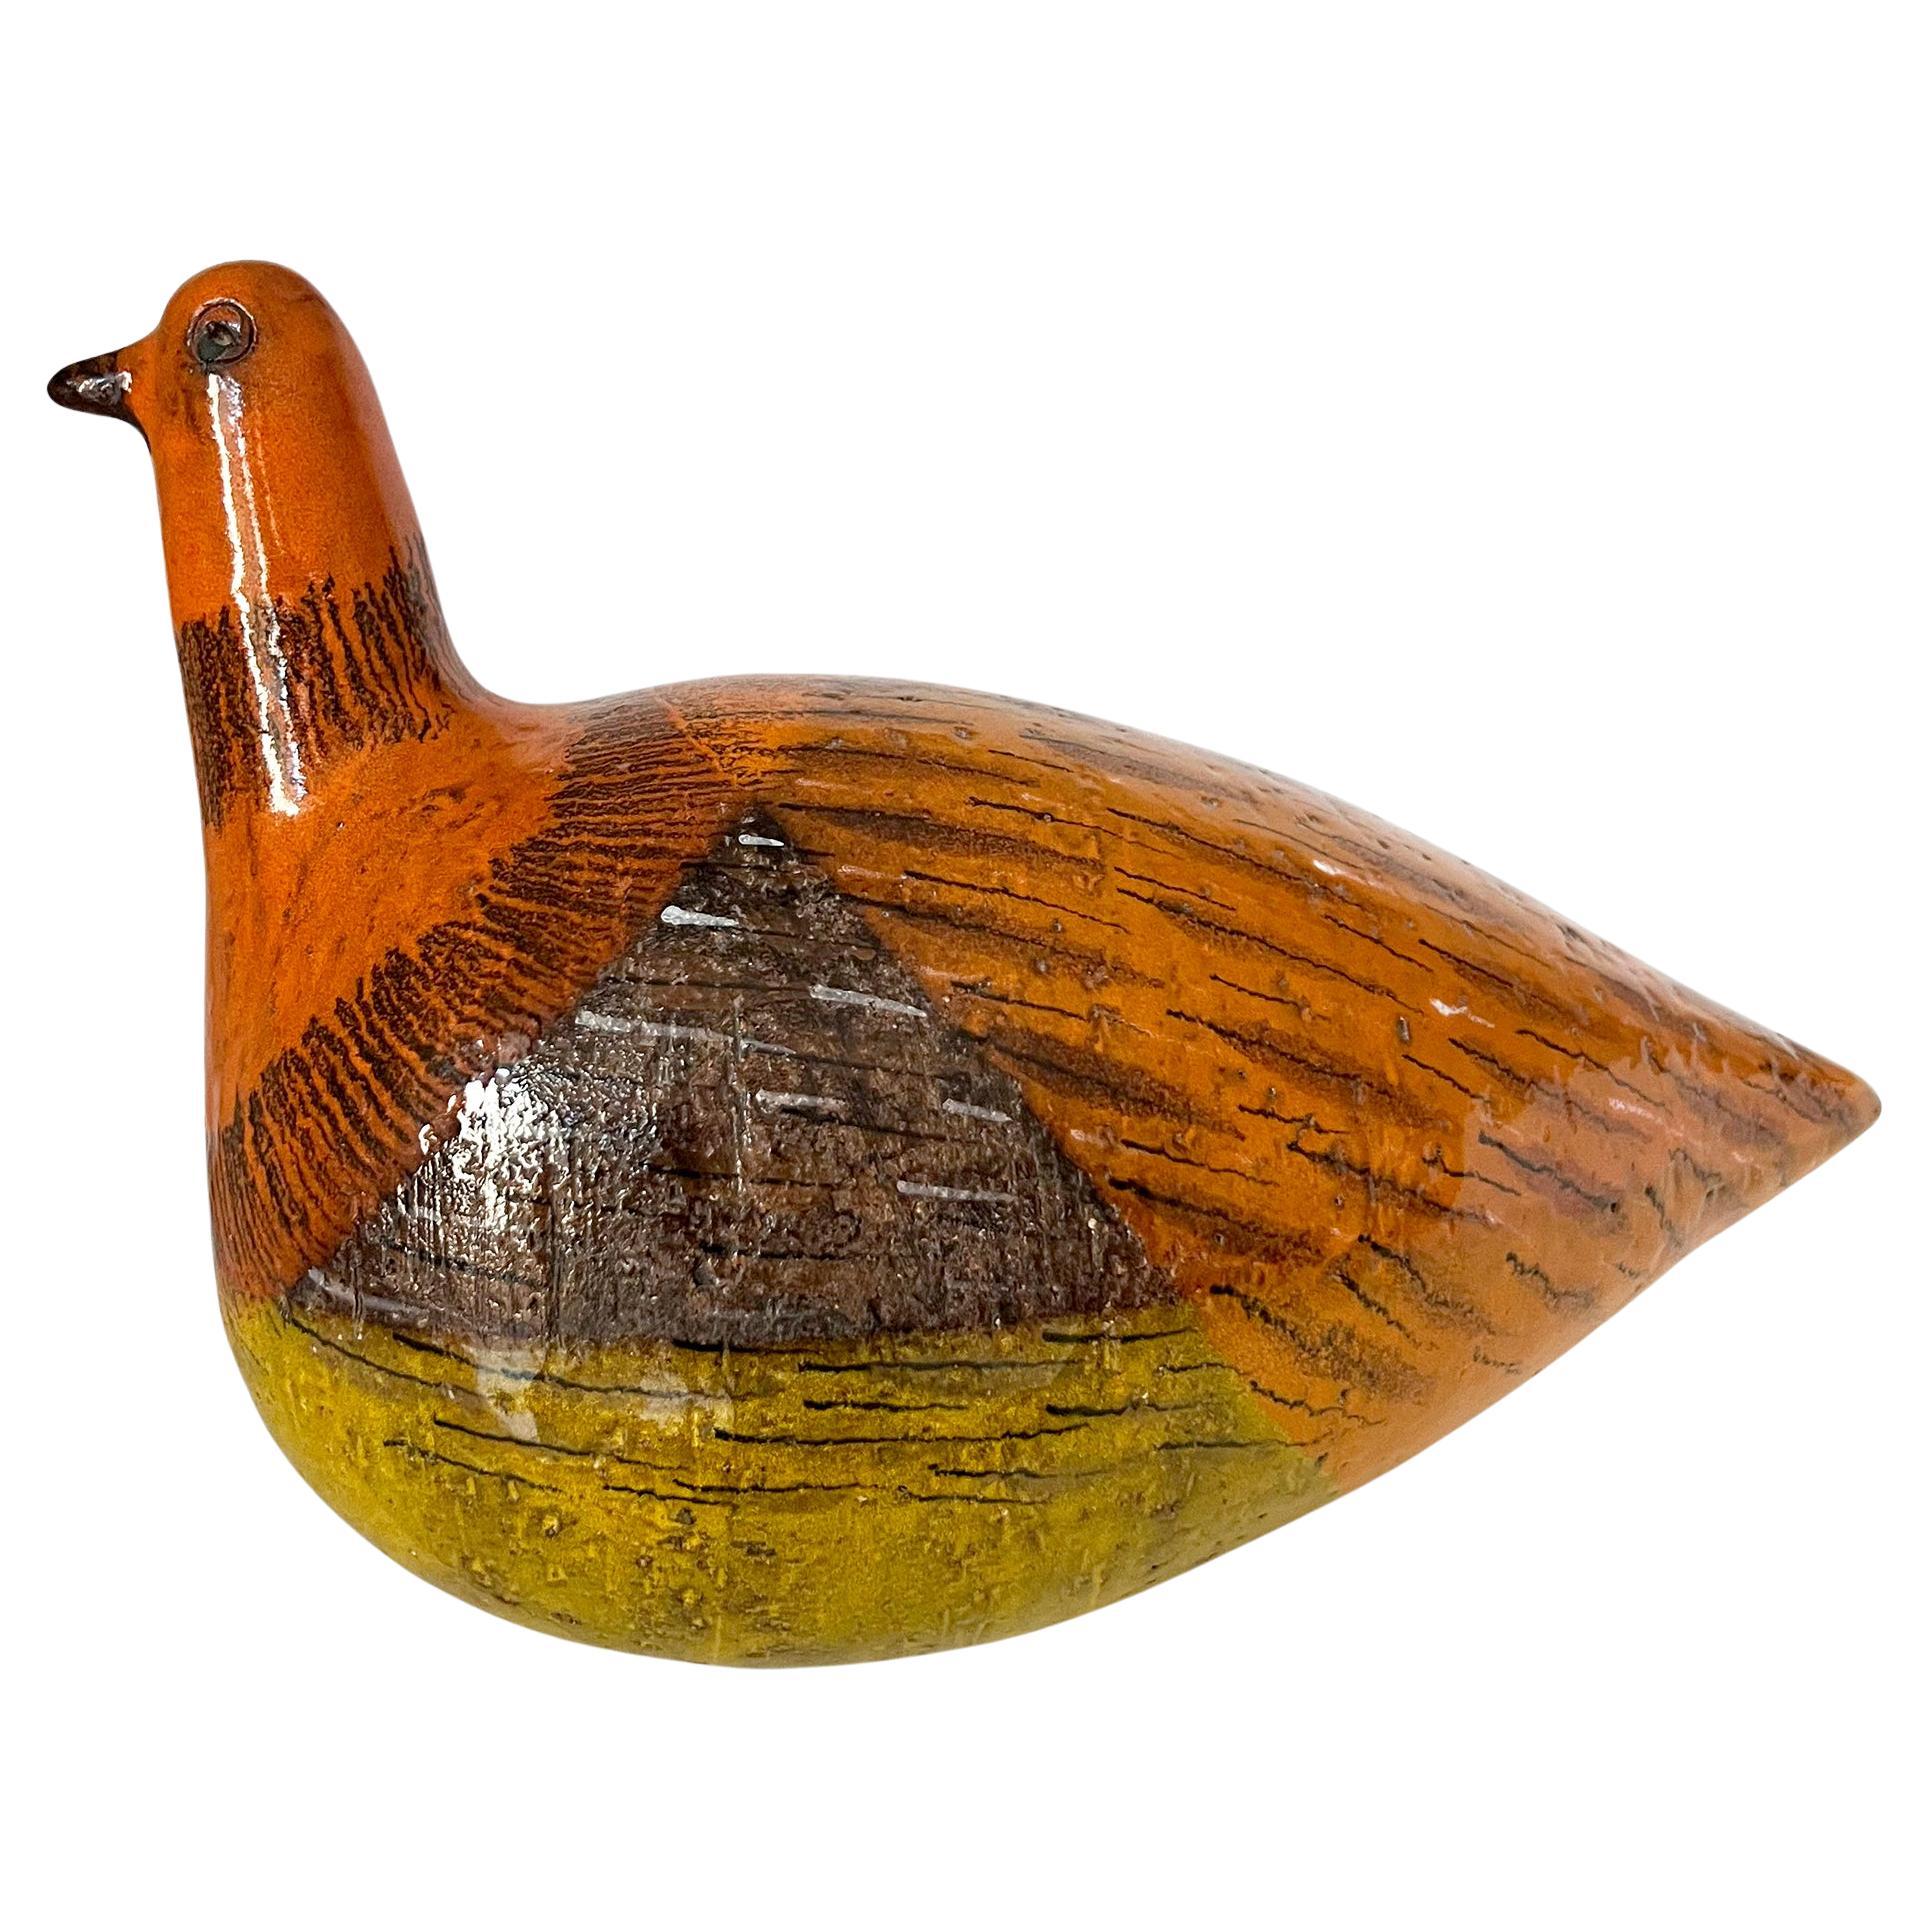 Italian modernist large scale bird ceramic sculpture created by Aldo Londi for Bitossi.  Bird measures 7.75